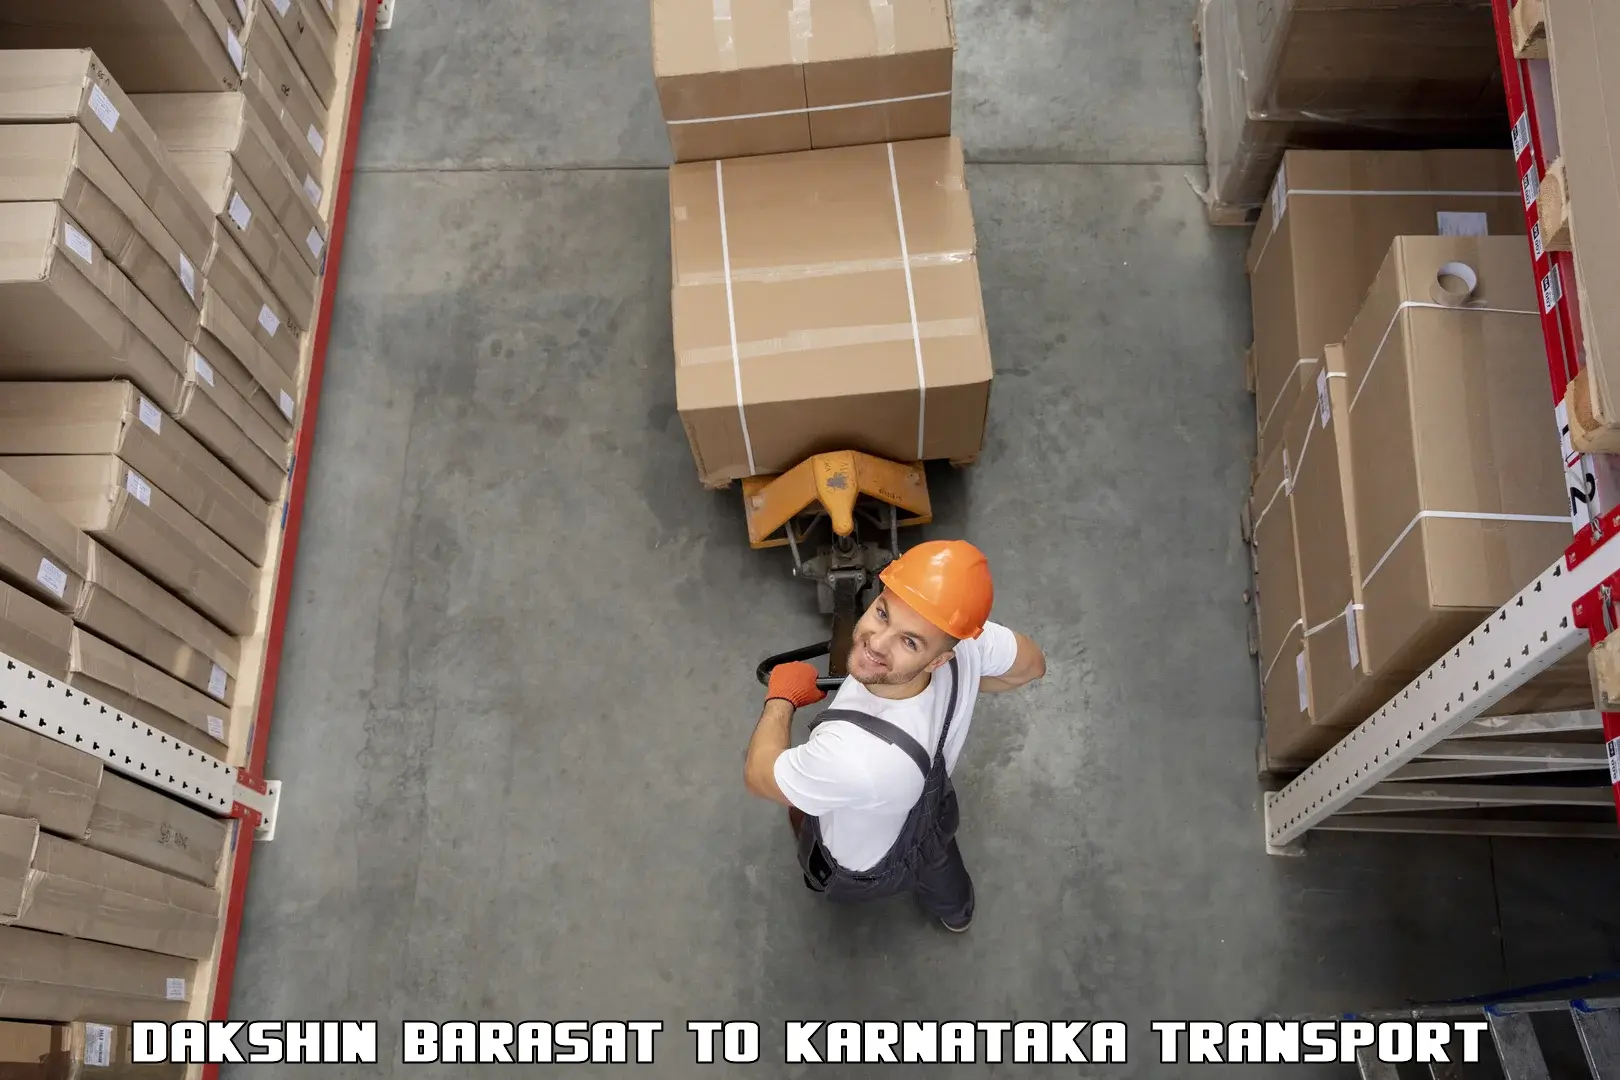 Furniture transport service Dakshin Barasat to Humnabad